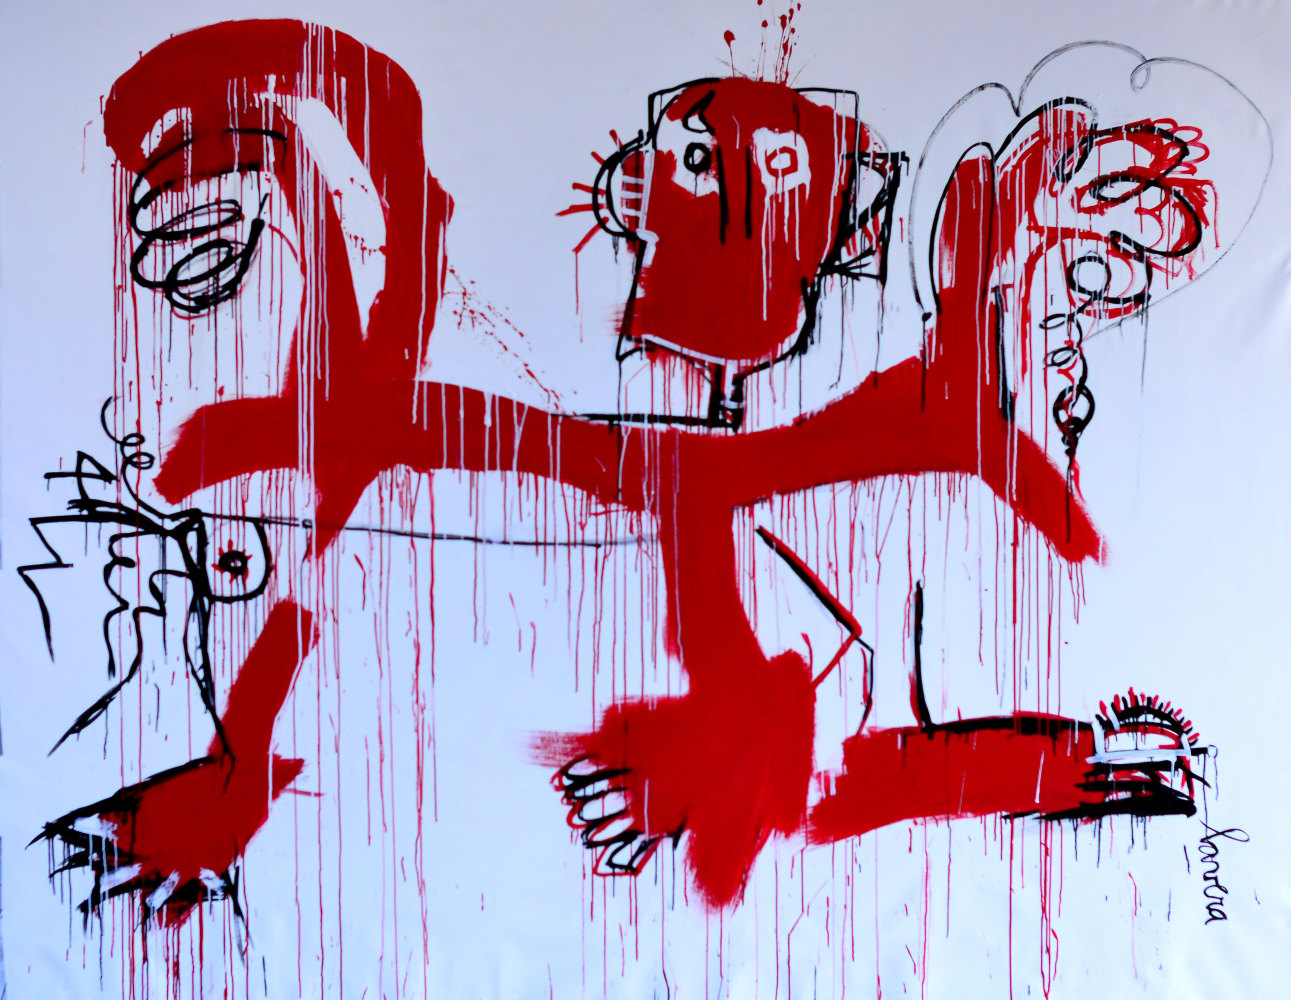 Fernanda Lavera, Danza con el Diablo, 2019, Graffiti and Street Art for Sale at Manolis Projects Art Gallery, Miami, Fl